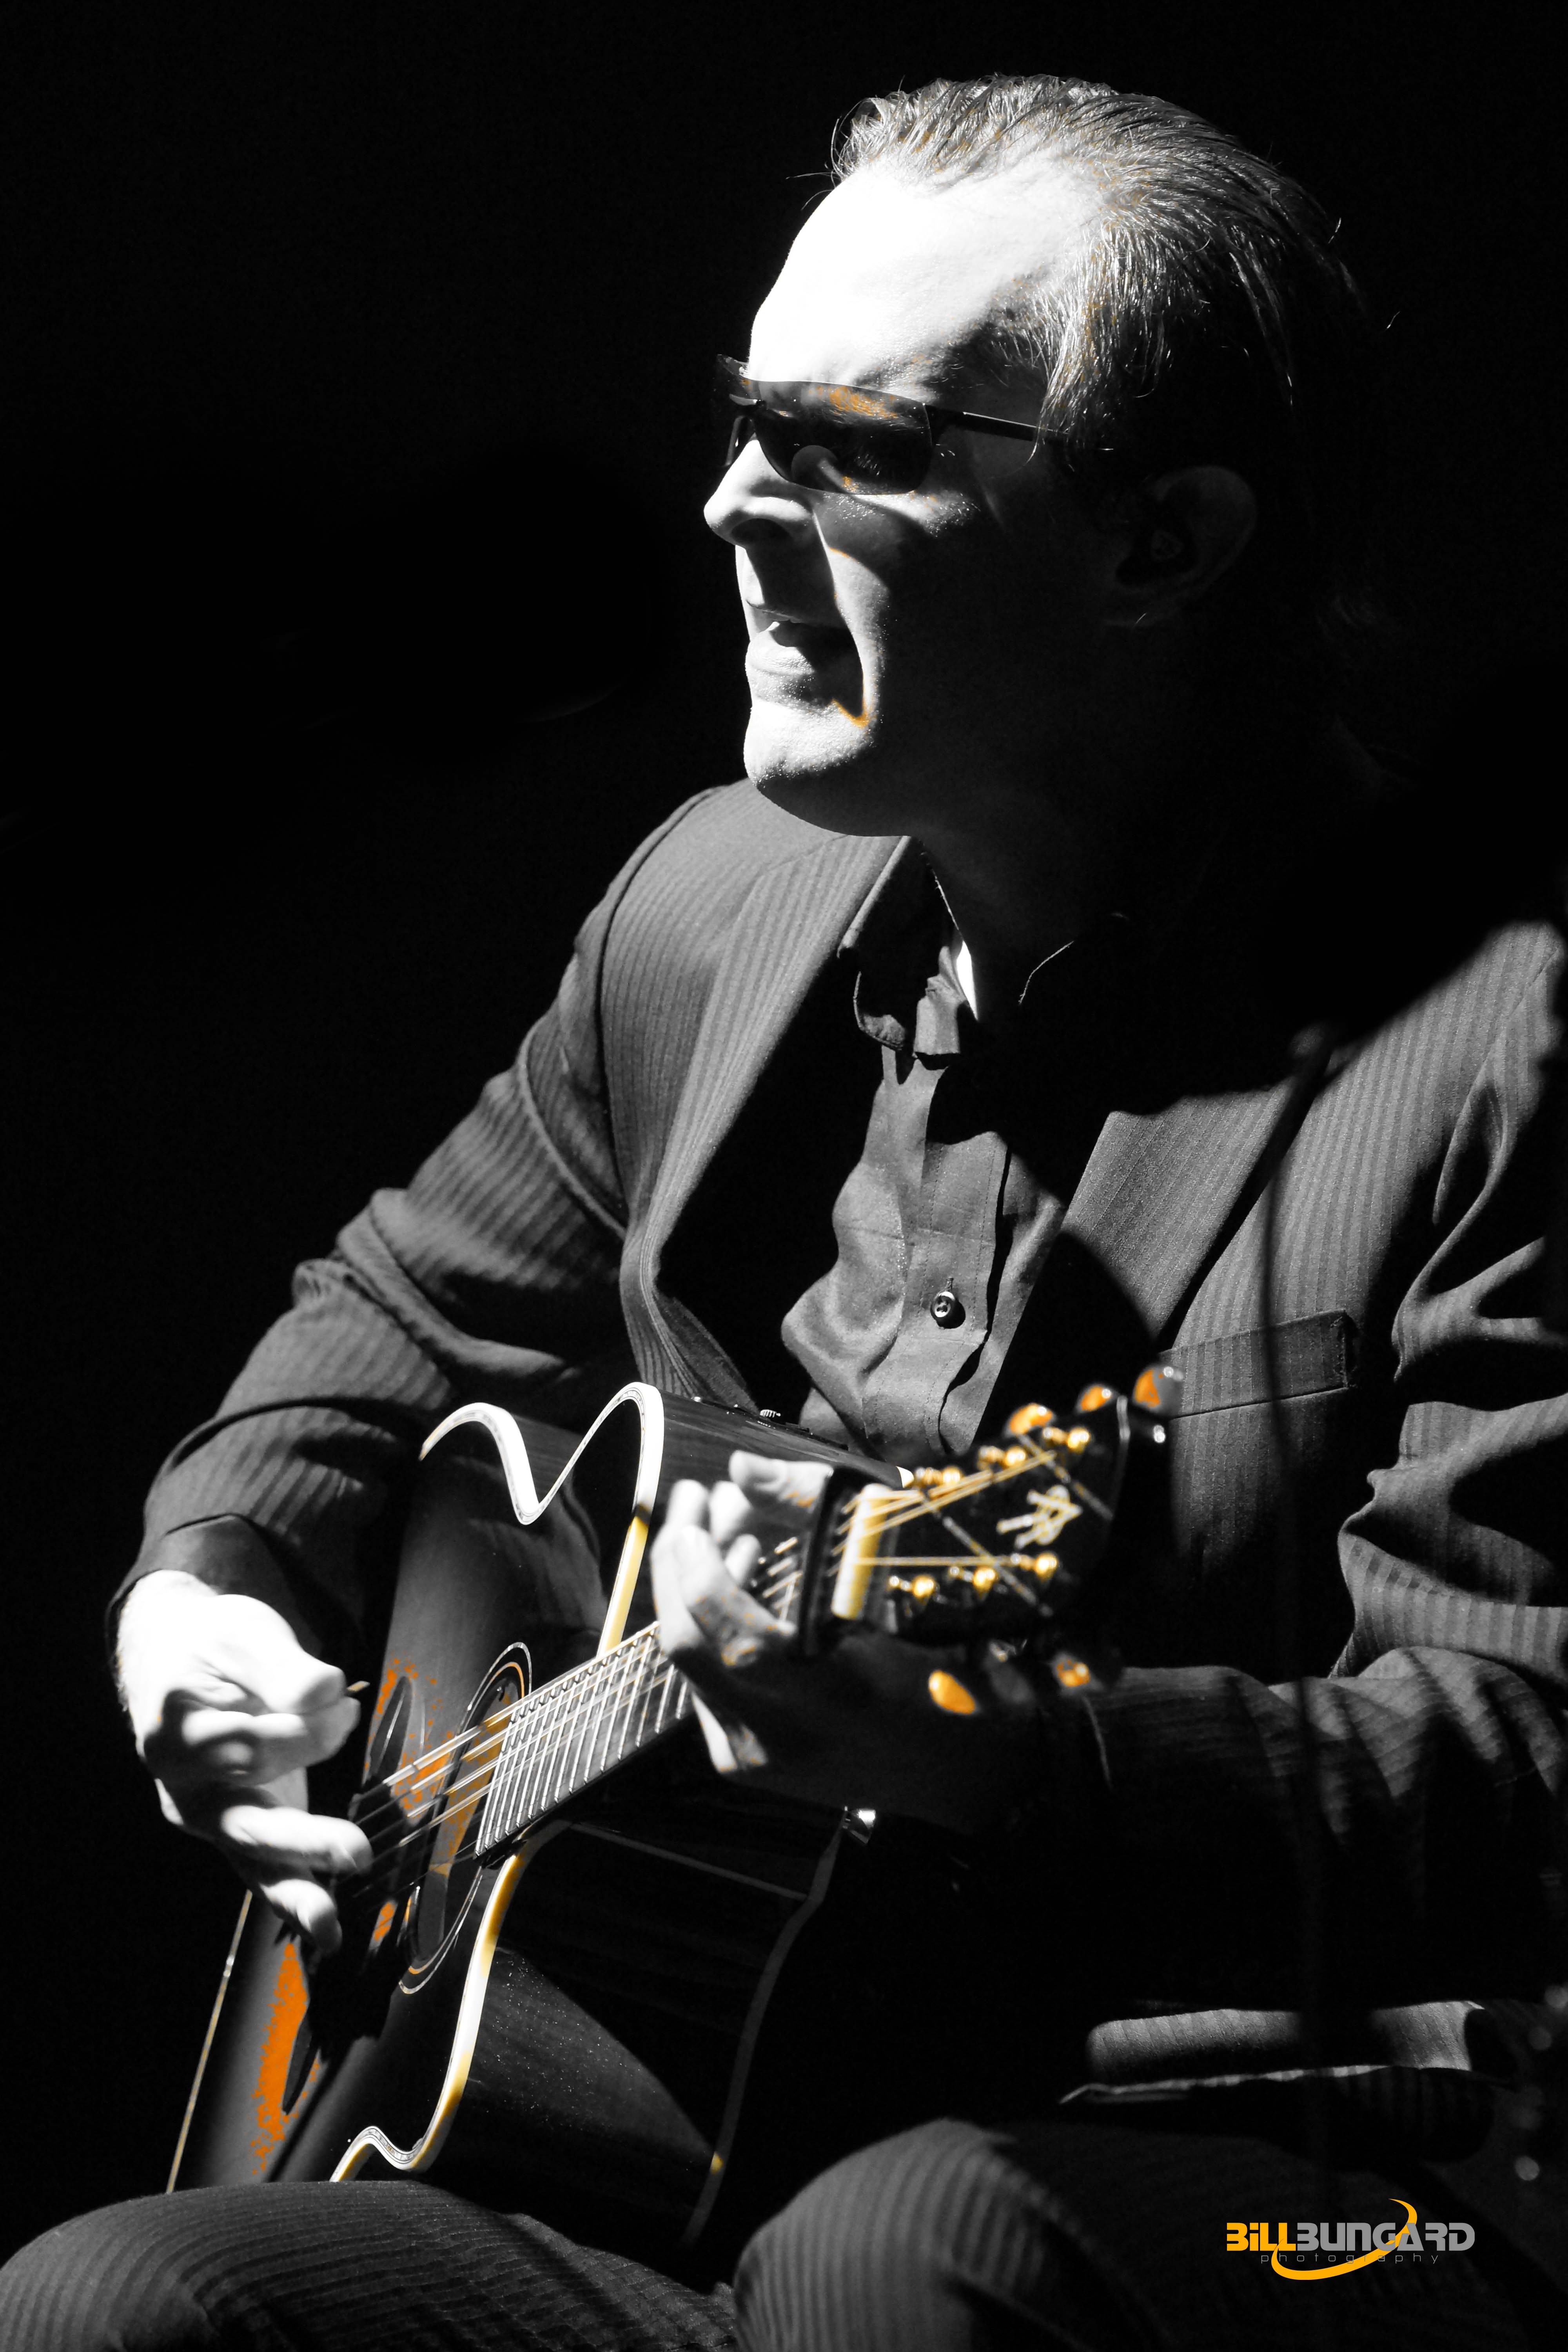 Joe Bonamassa Live @ The Paramount – 4/12/13 (Photo by Bill Bungard)